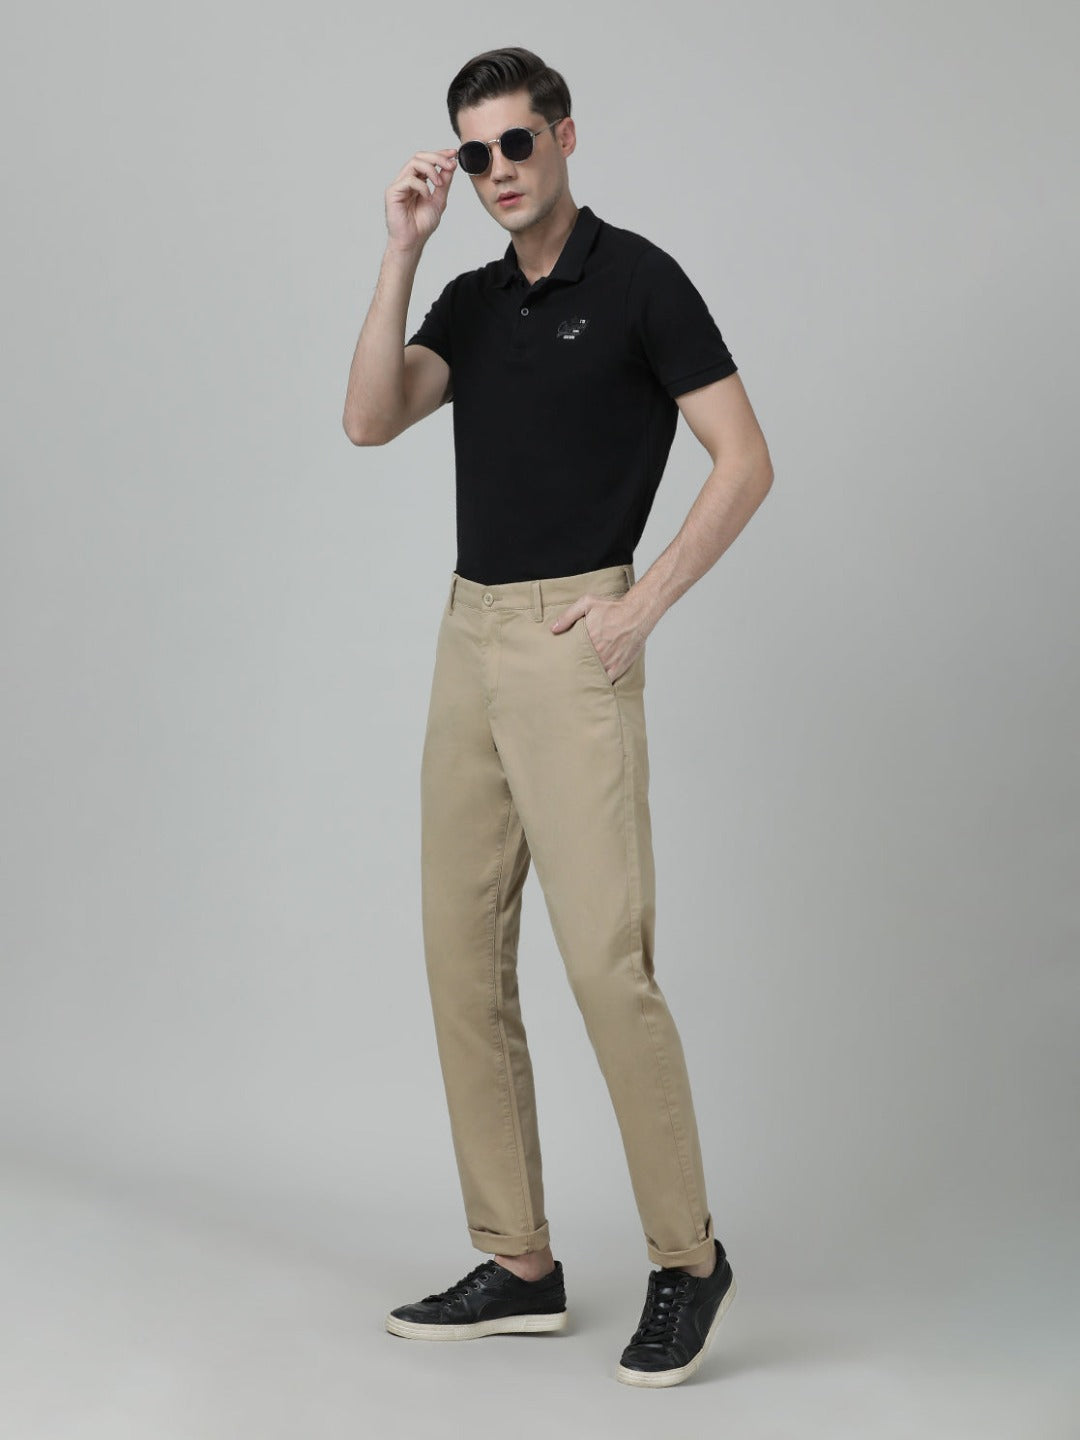 Casual Solid Khaki Slim Fit Slim fit Trouser for Men